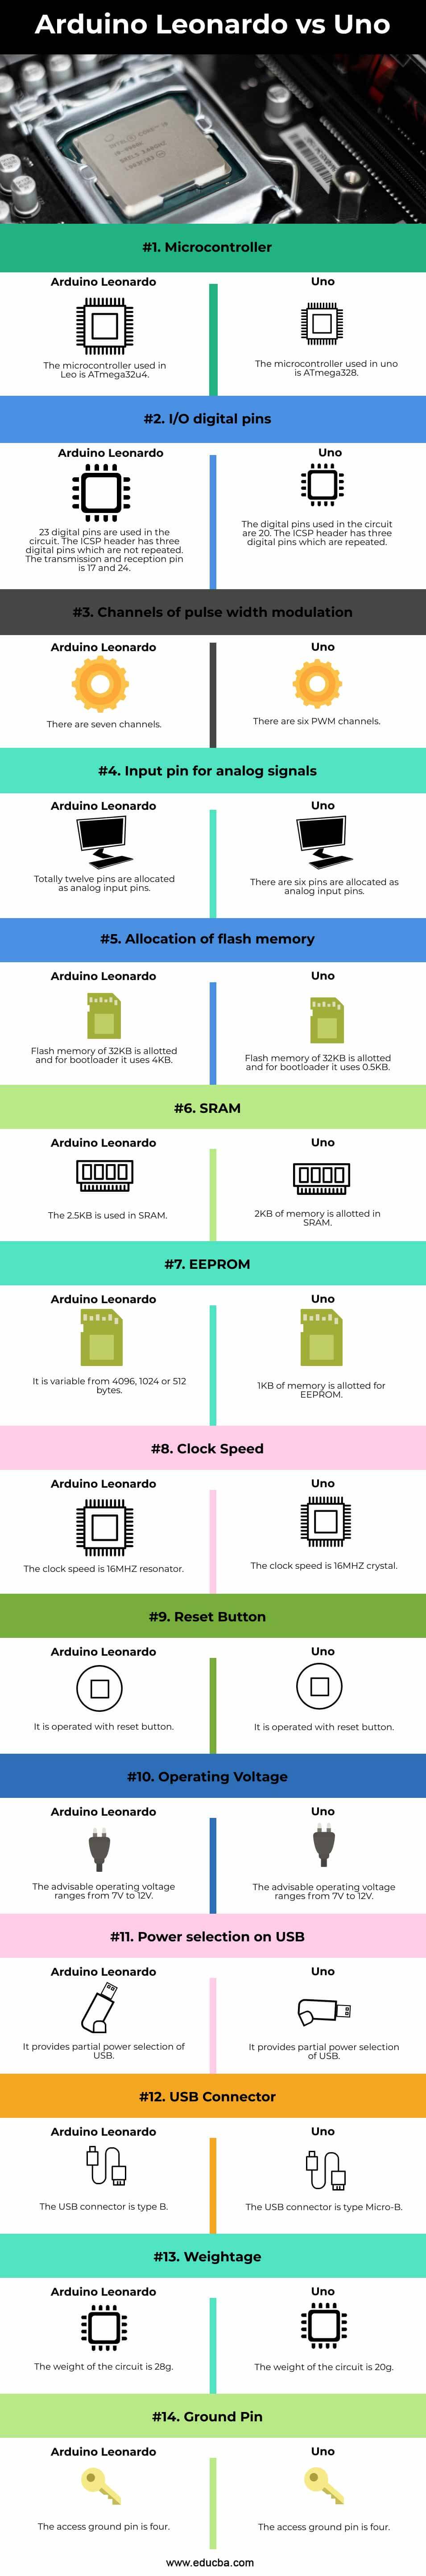 Arduino-Leonardo-vs-Uno-info